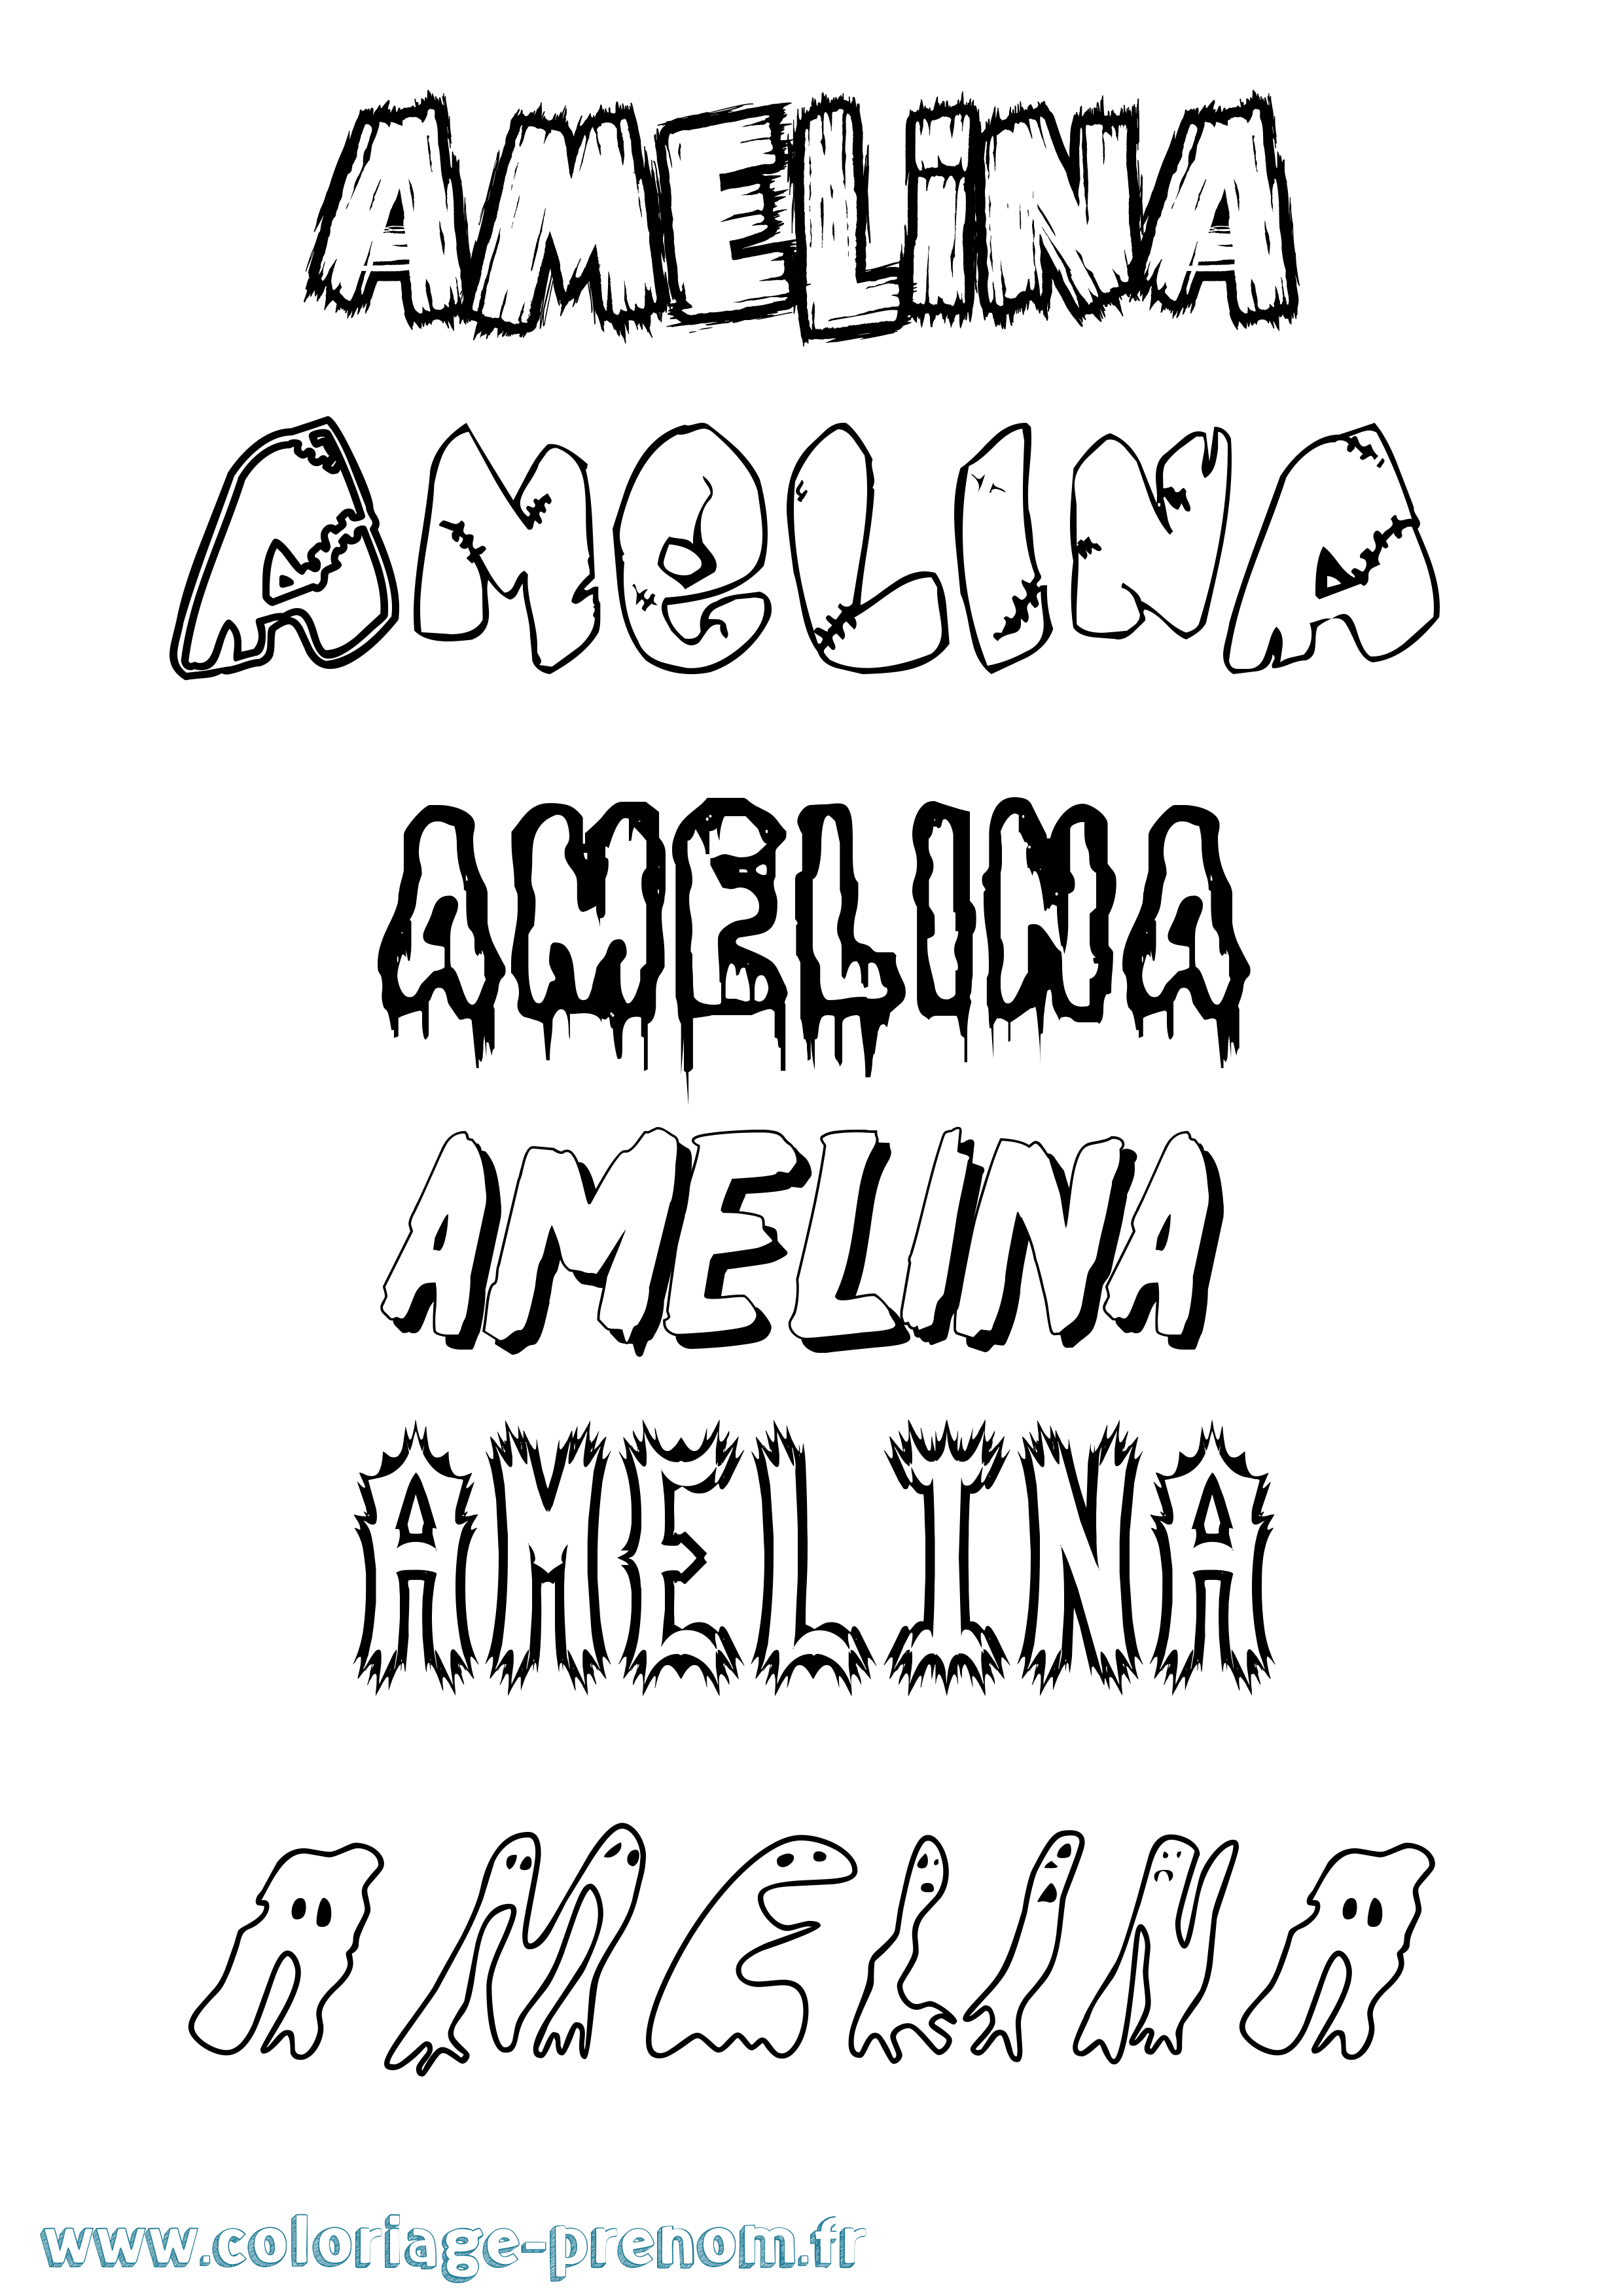 Coloriage prénom Amelina Frisson